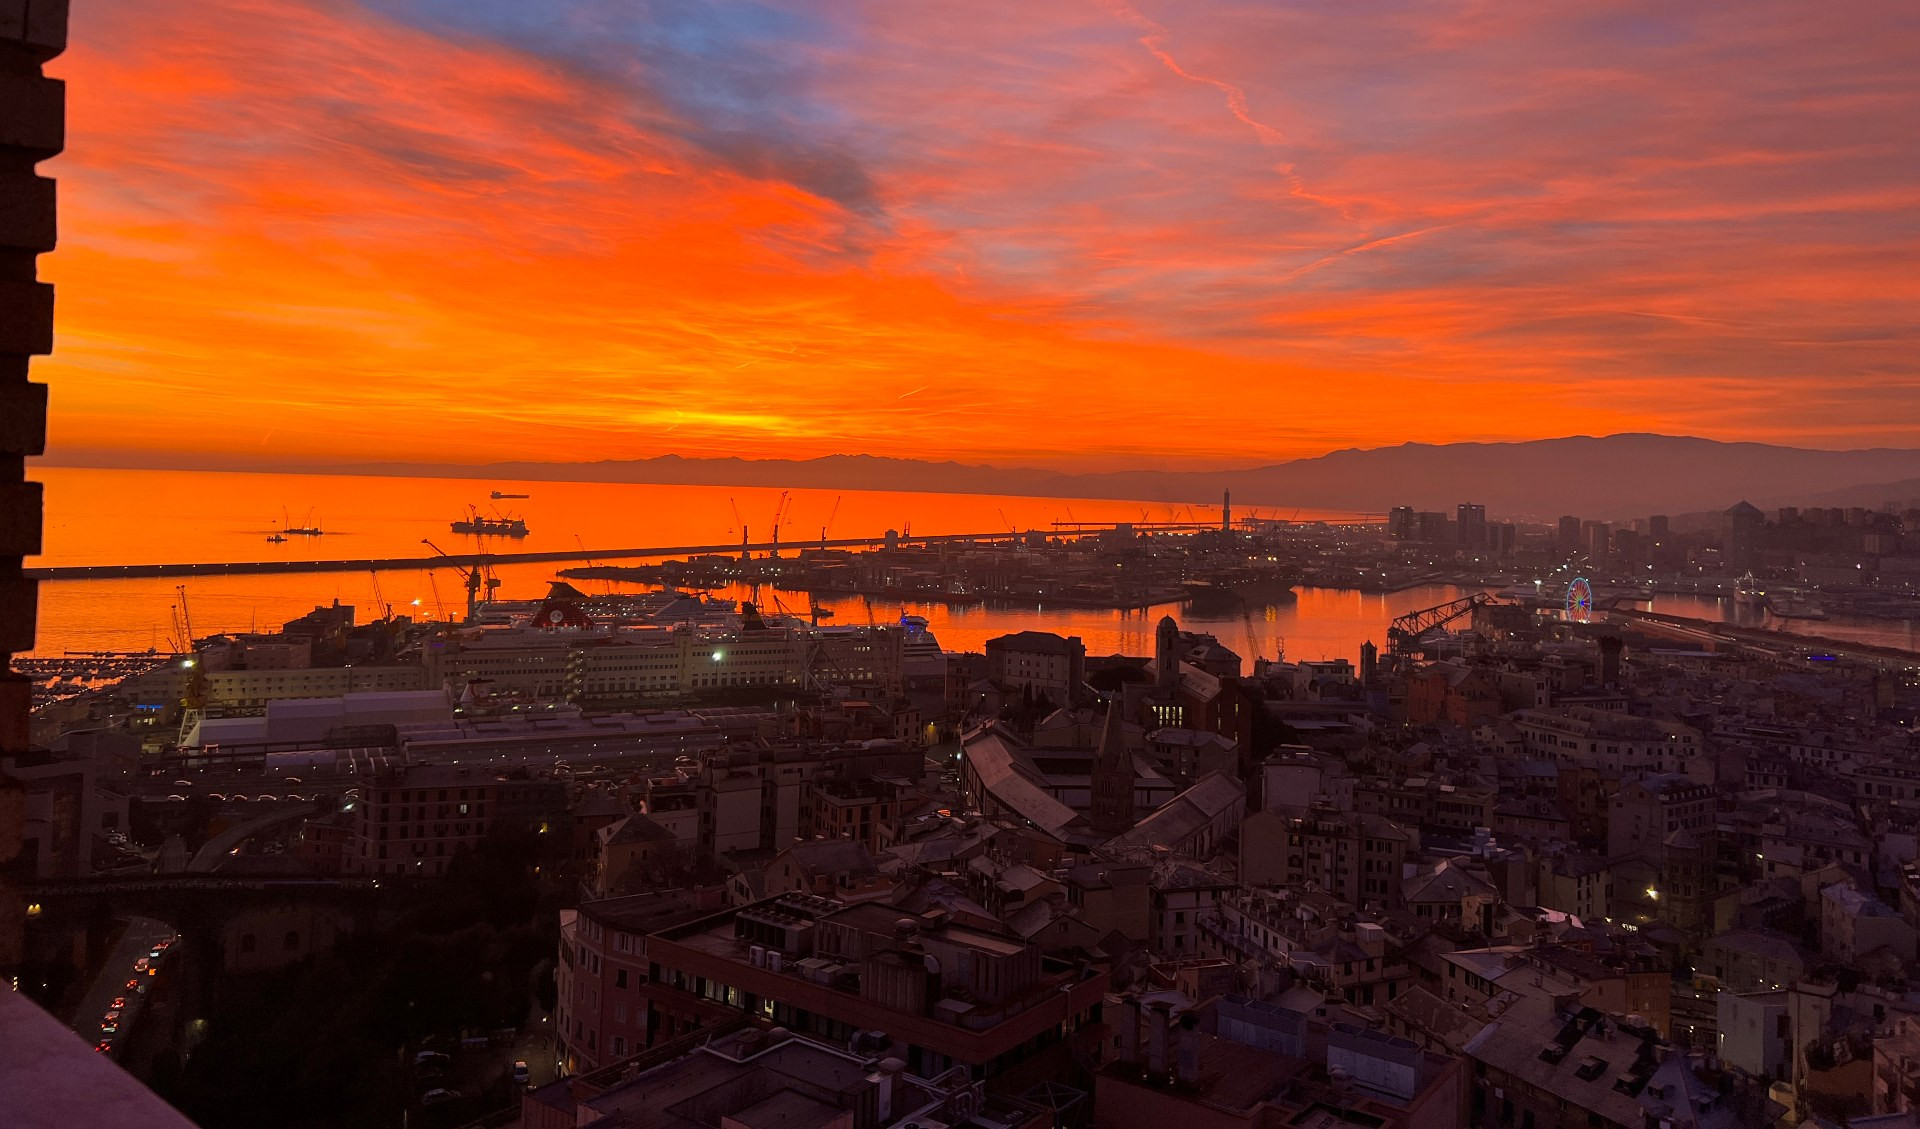 Tramonto rosso fuoco a Genova, le spettacolari immagini da Terrazza Colombo